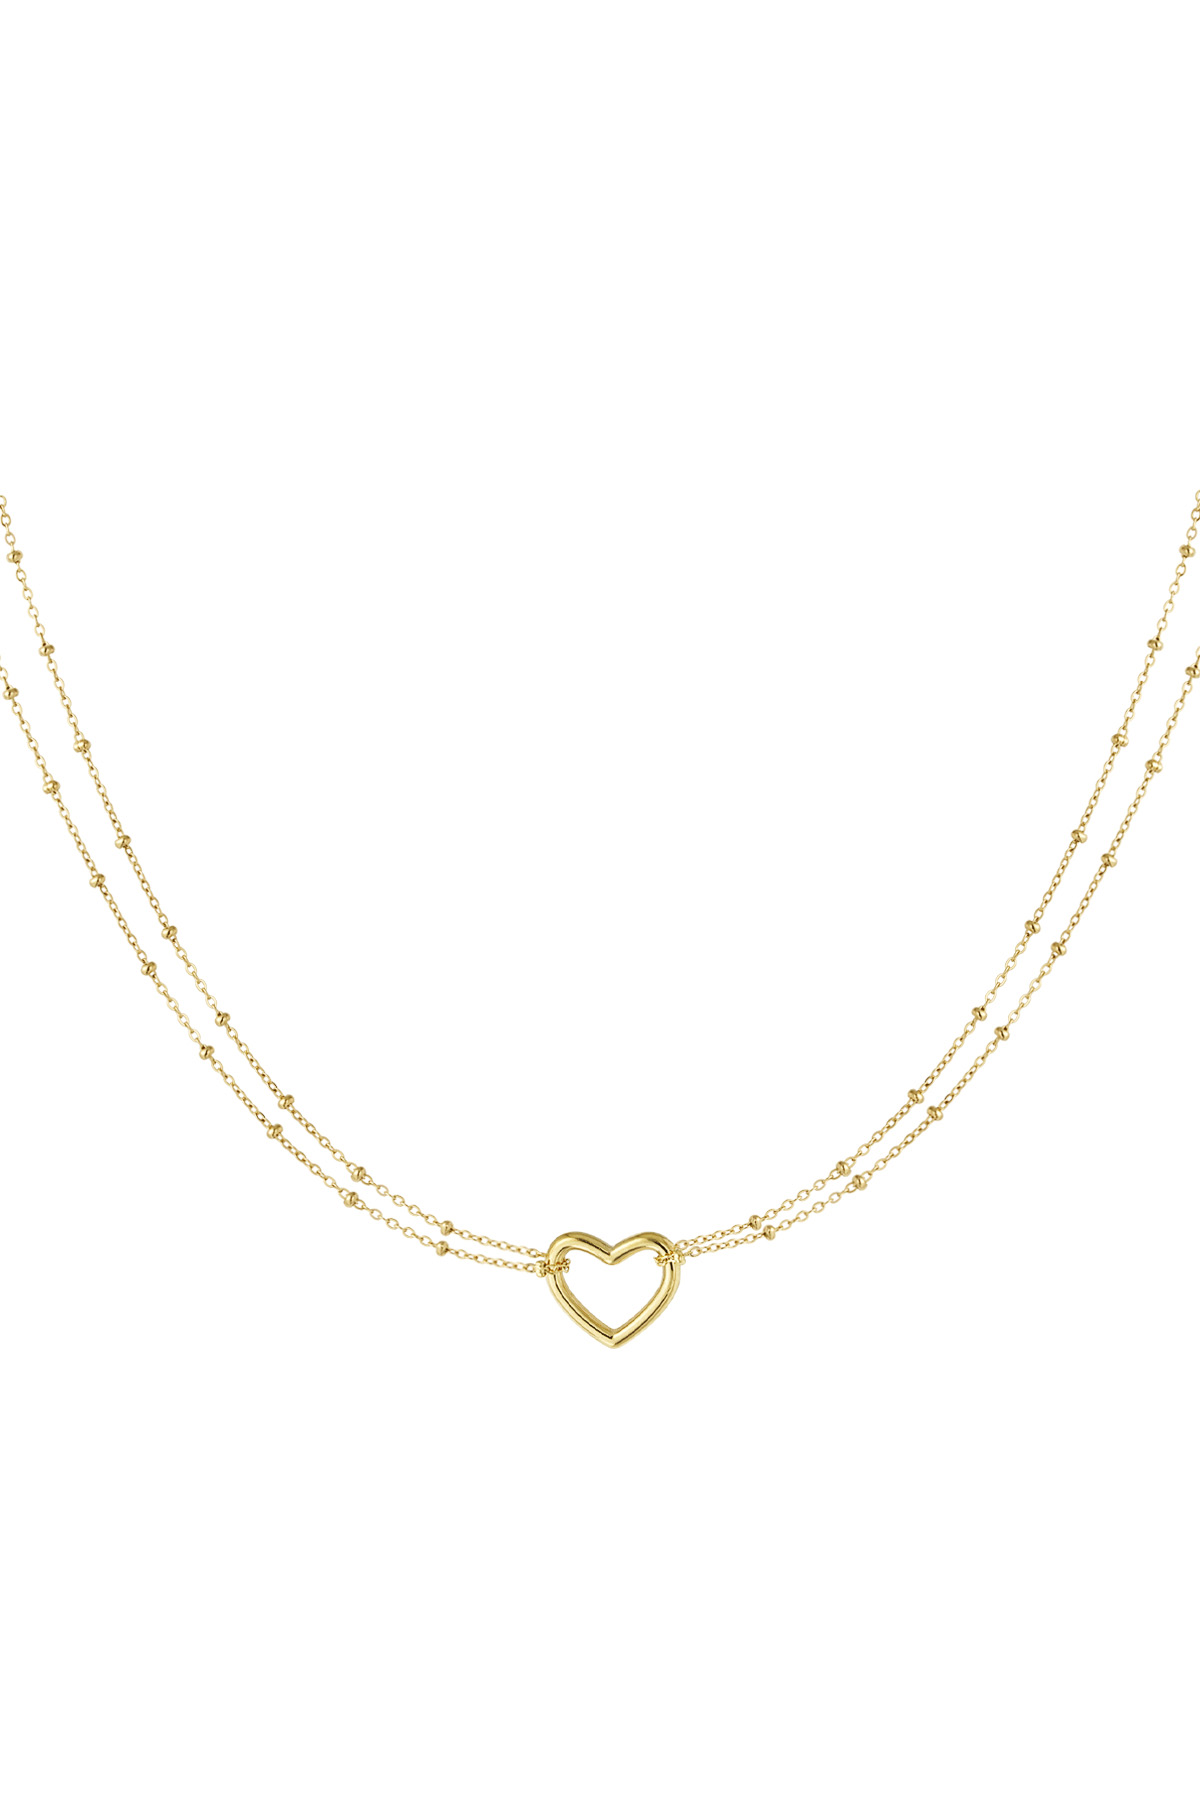 Halskette Herzfarbe - gold h5 